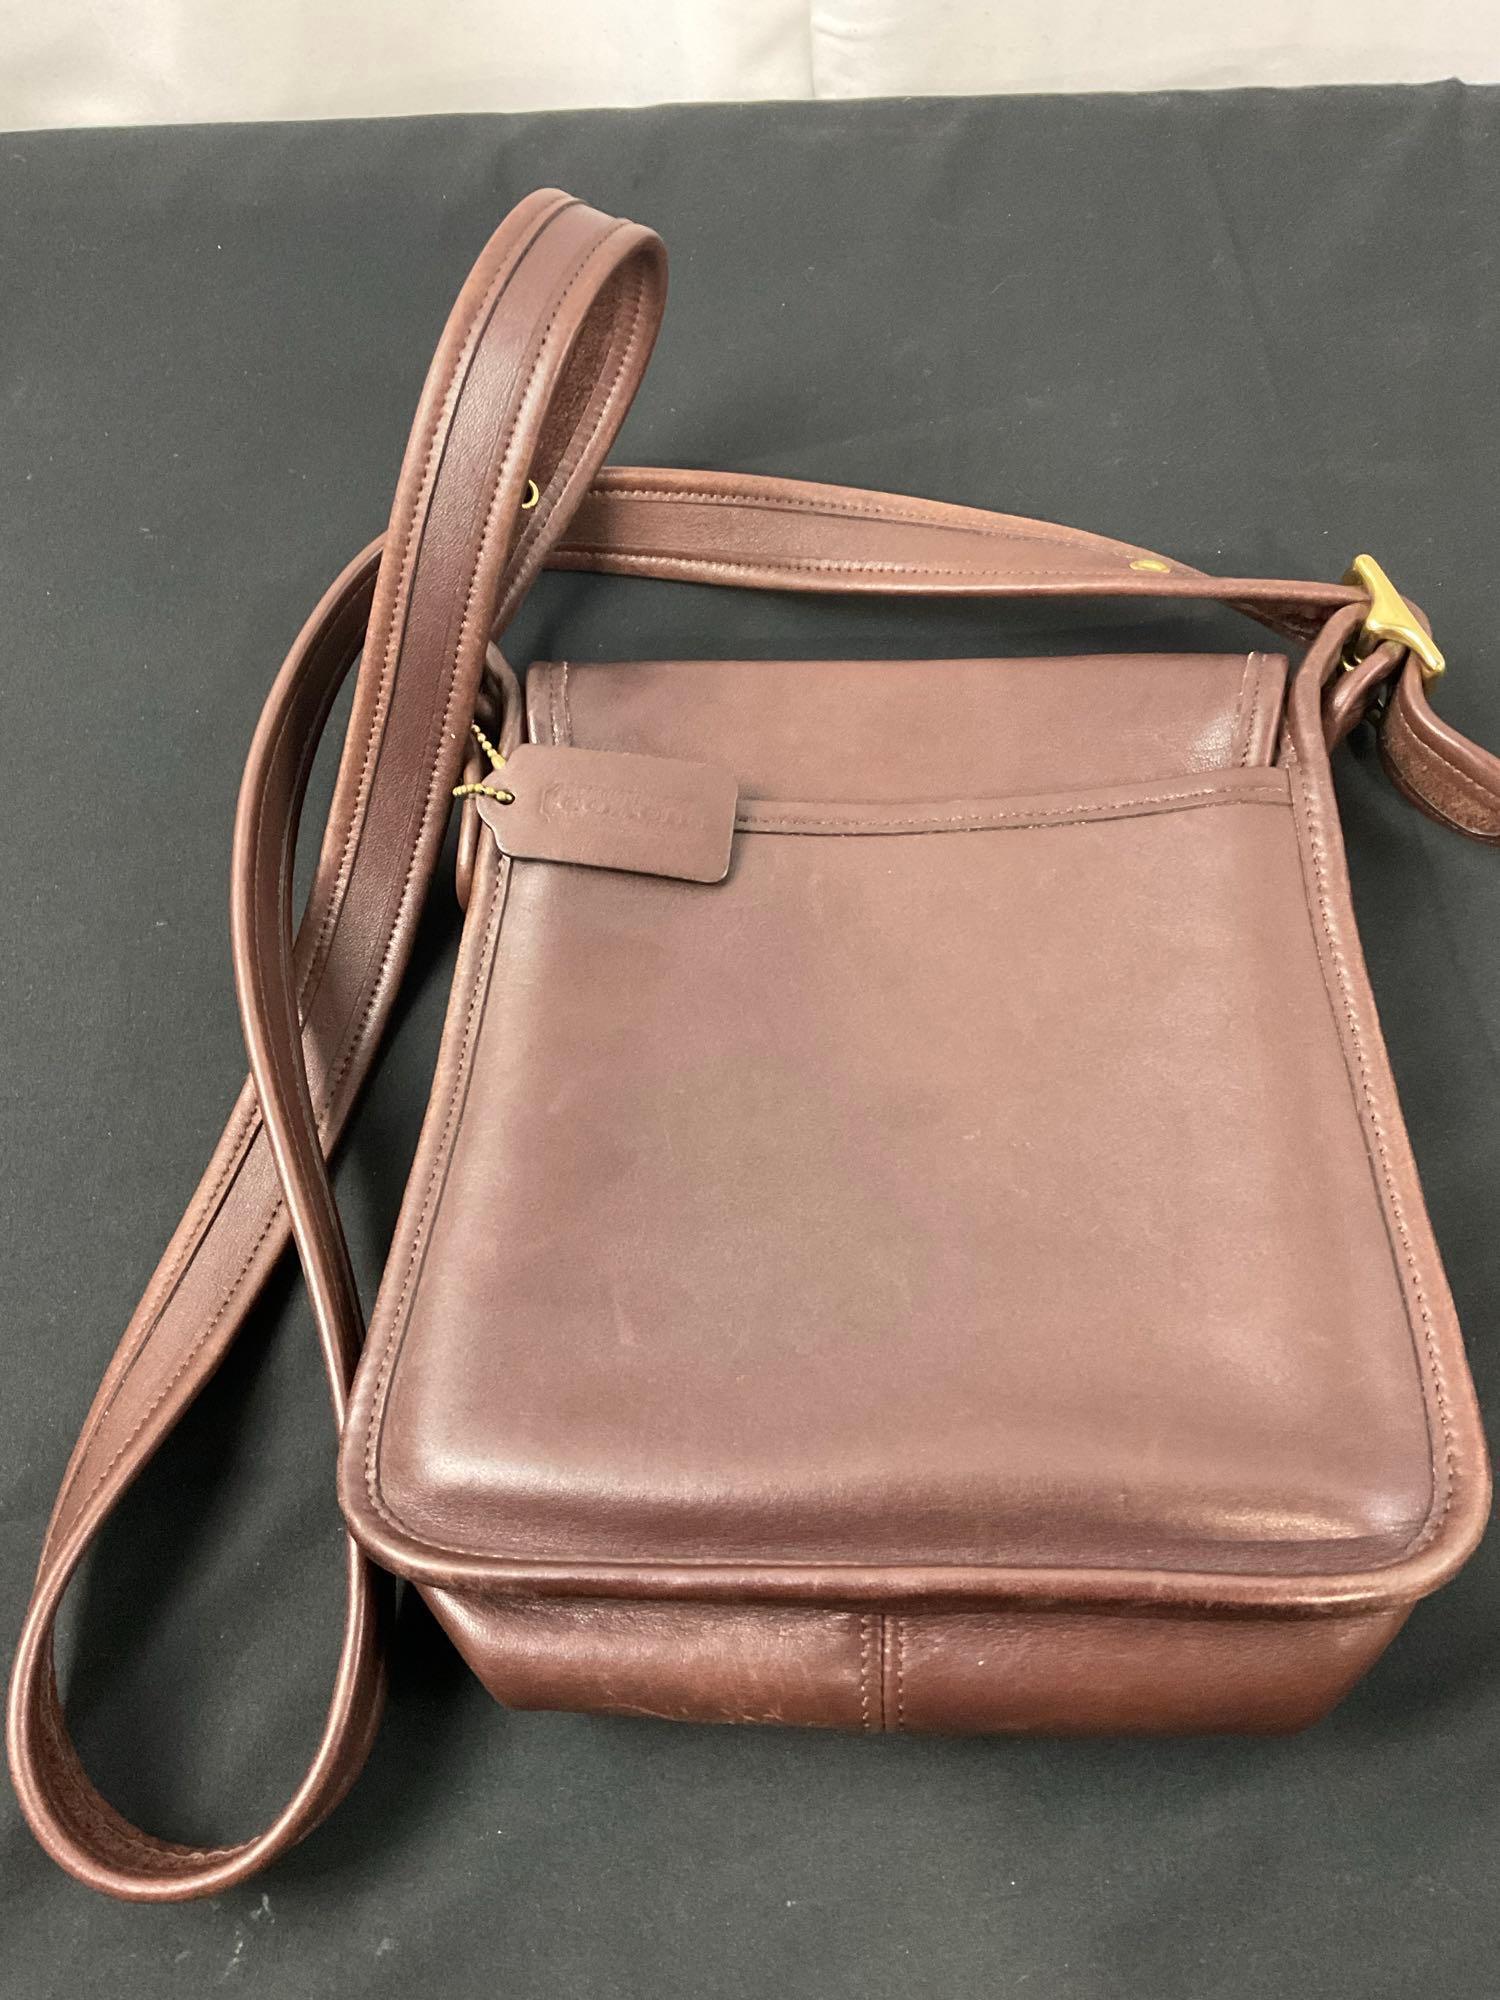 Coach Handbag No K9Z-9145, Espresso Brown in color w/ brass elements